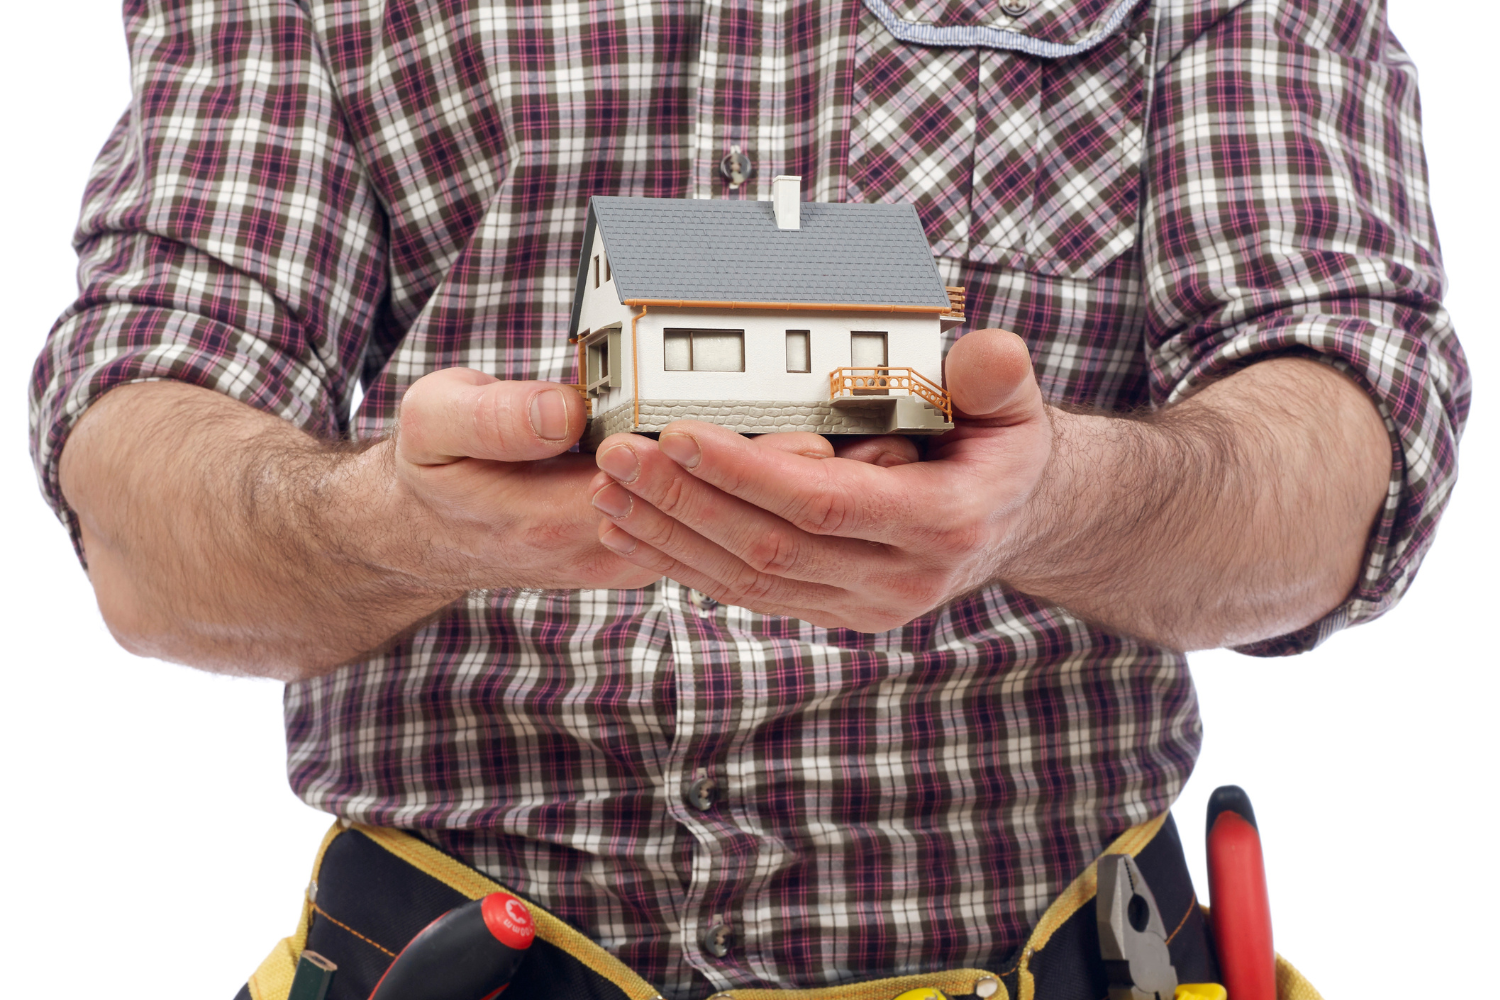 Home appliance technician holding a house in his hands, quality care. / Técnico de electrodomésticos con una casa en sus manos, atención de calidad.